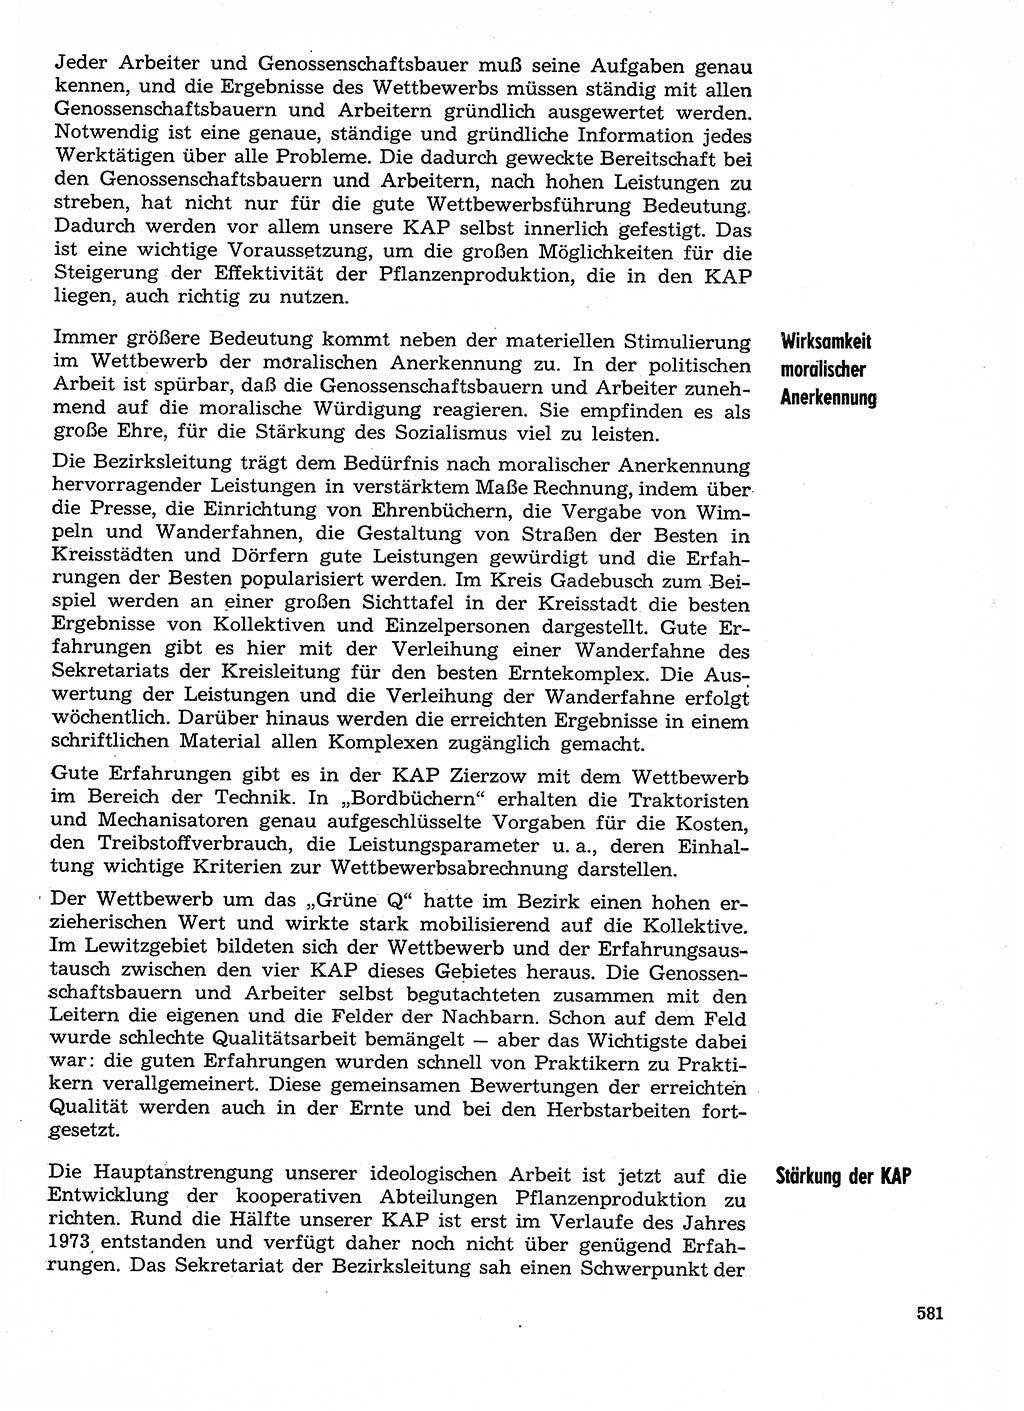 Neuer Weg (NW), Organ des Zentralkomitees (ZK) der SED (Sozialistische Einheitspartei Deutschlands) für Fragen des Parteilebens, 29. Jahrgang [Deutsche Demokratische Republik (DDR)] 1974, Seite 581 (NW ZK SED DDR 1974, S. 581)